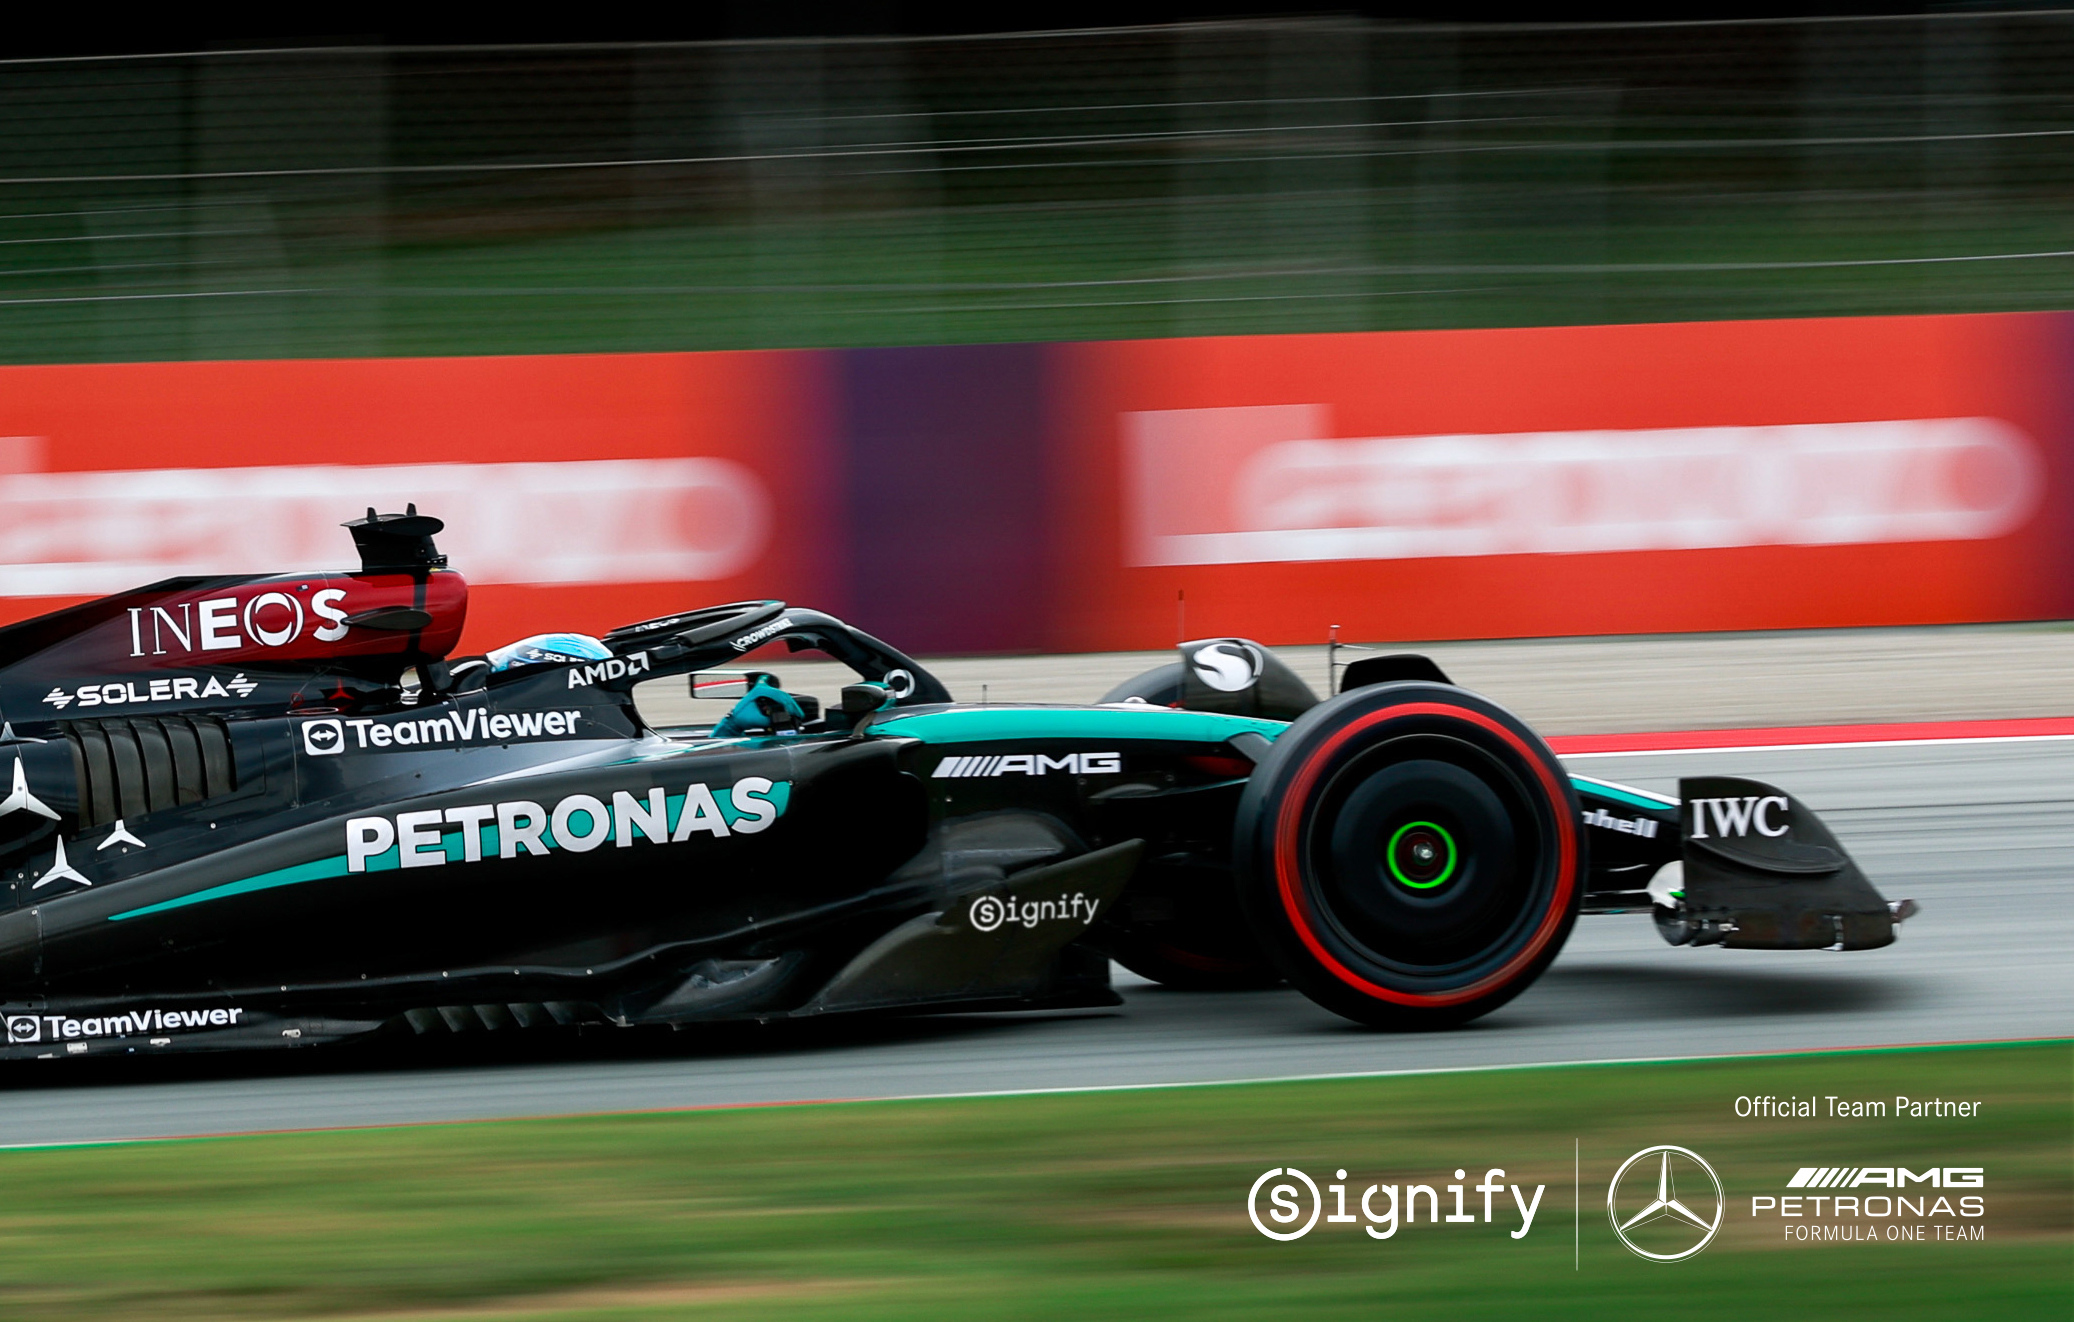 Parteneriatul Signify și Mercedes-AMG PETRONAS Formula 1 Team conduce prin inovație responsabilă atât pe pistă, cât și în afara ei